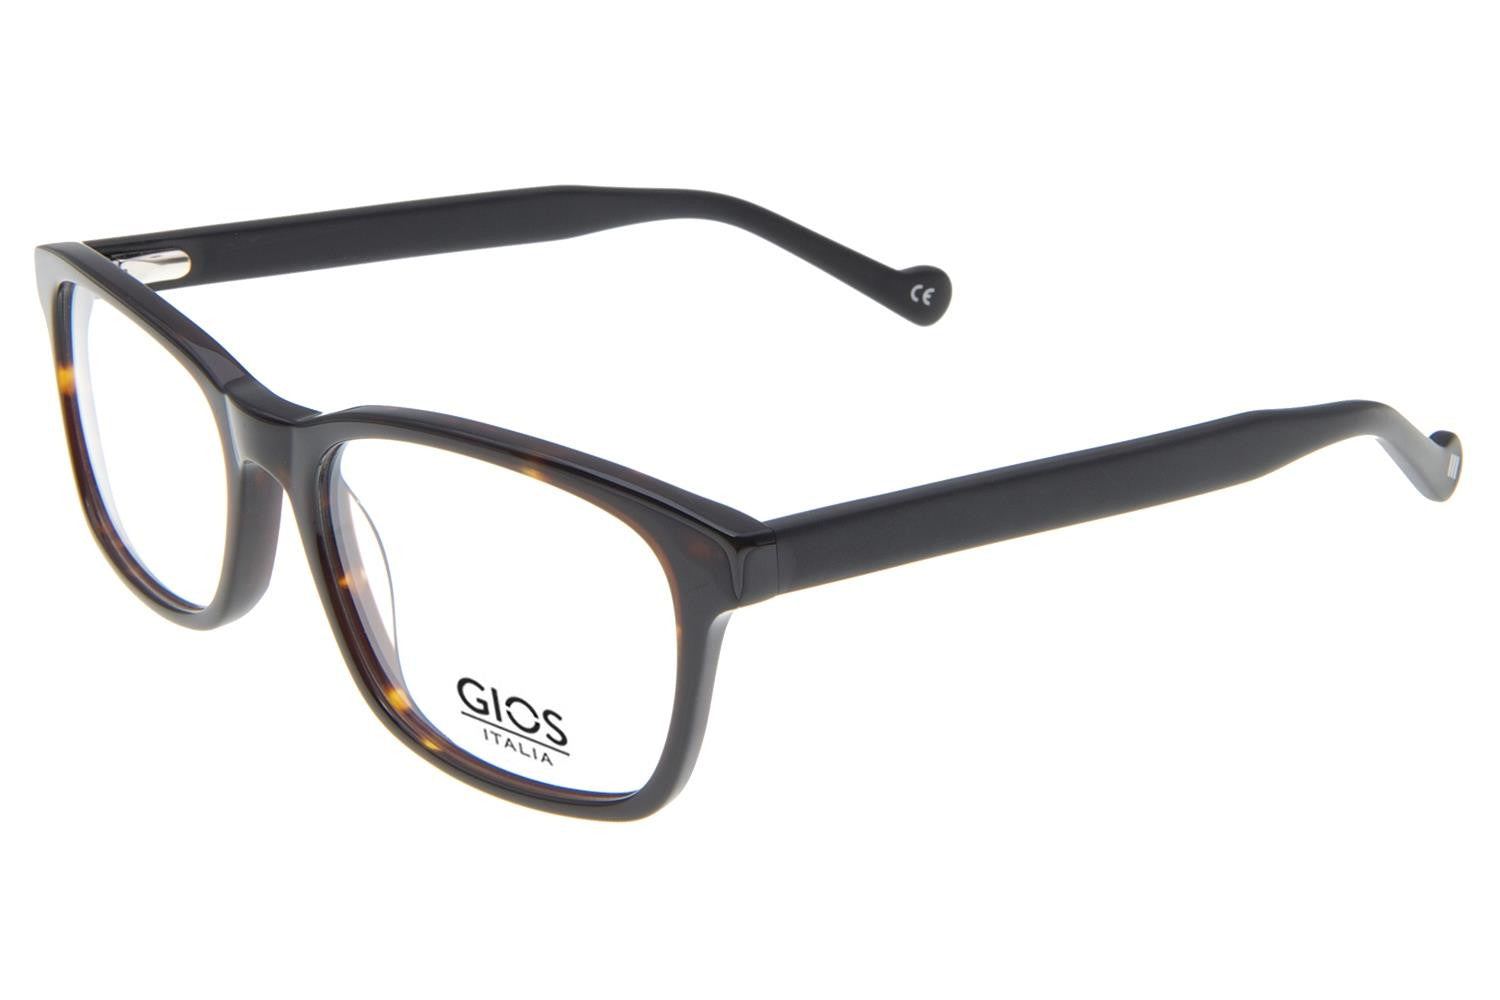 GIOS ITALIA Eyeglasses GRF500103